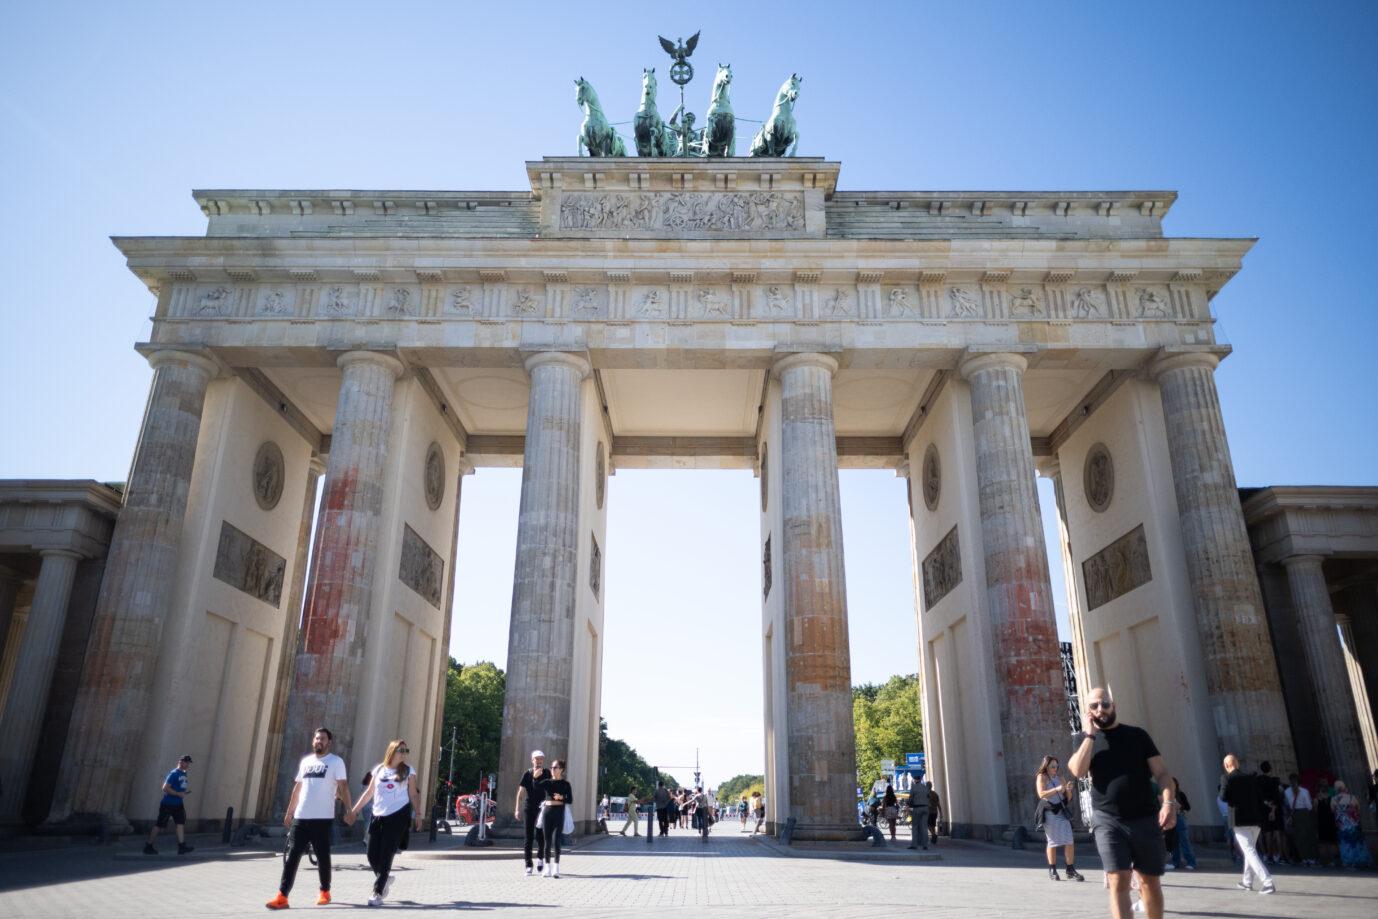 Farbreste sind an den Säulen des Brandenburger Tors zu sehen.